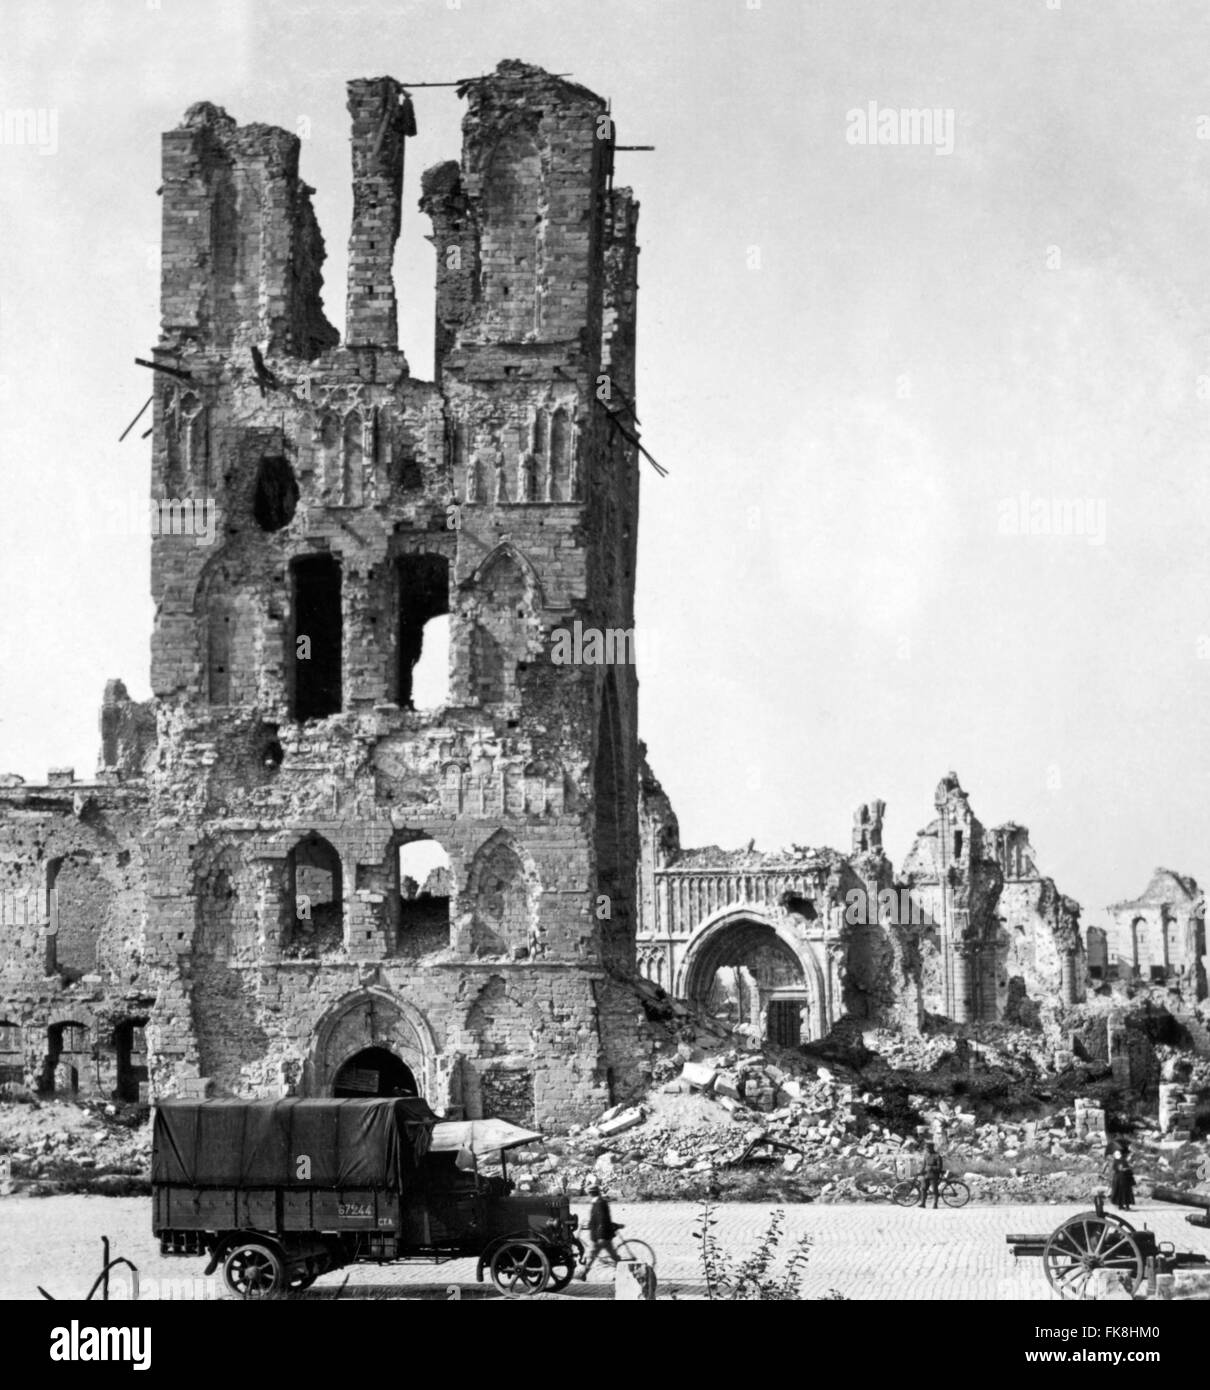 Ruines de la cathédrale d'Ypres avec un camion de l'armée britannique au premier plan, la Flandre, la Belgique dans la Première Guerre mondiale. Photo prise entre 1914 et 1918 Banque D'Images